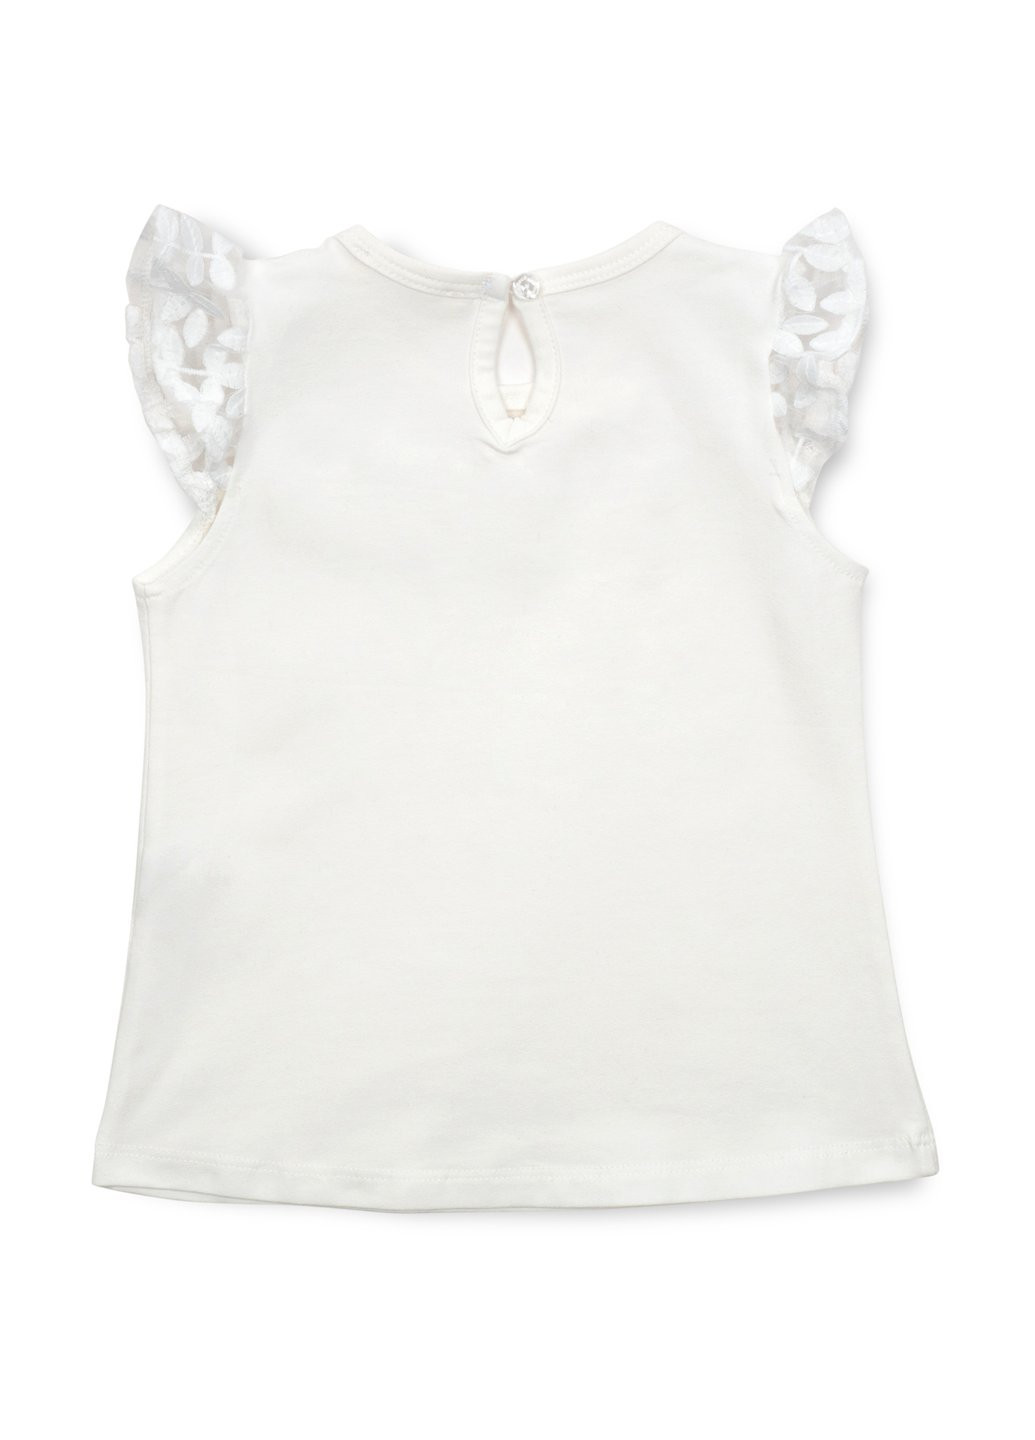 Комбинированная футболка детская с кружевом (12904-140g-cream) Breeze